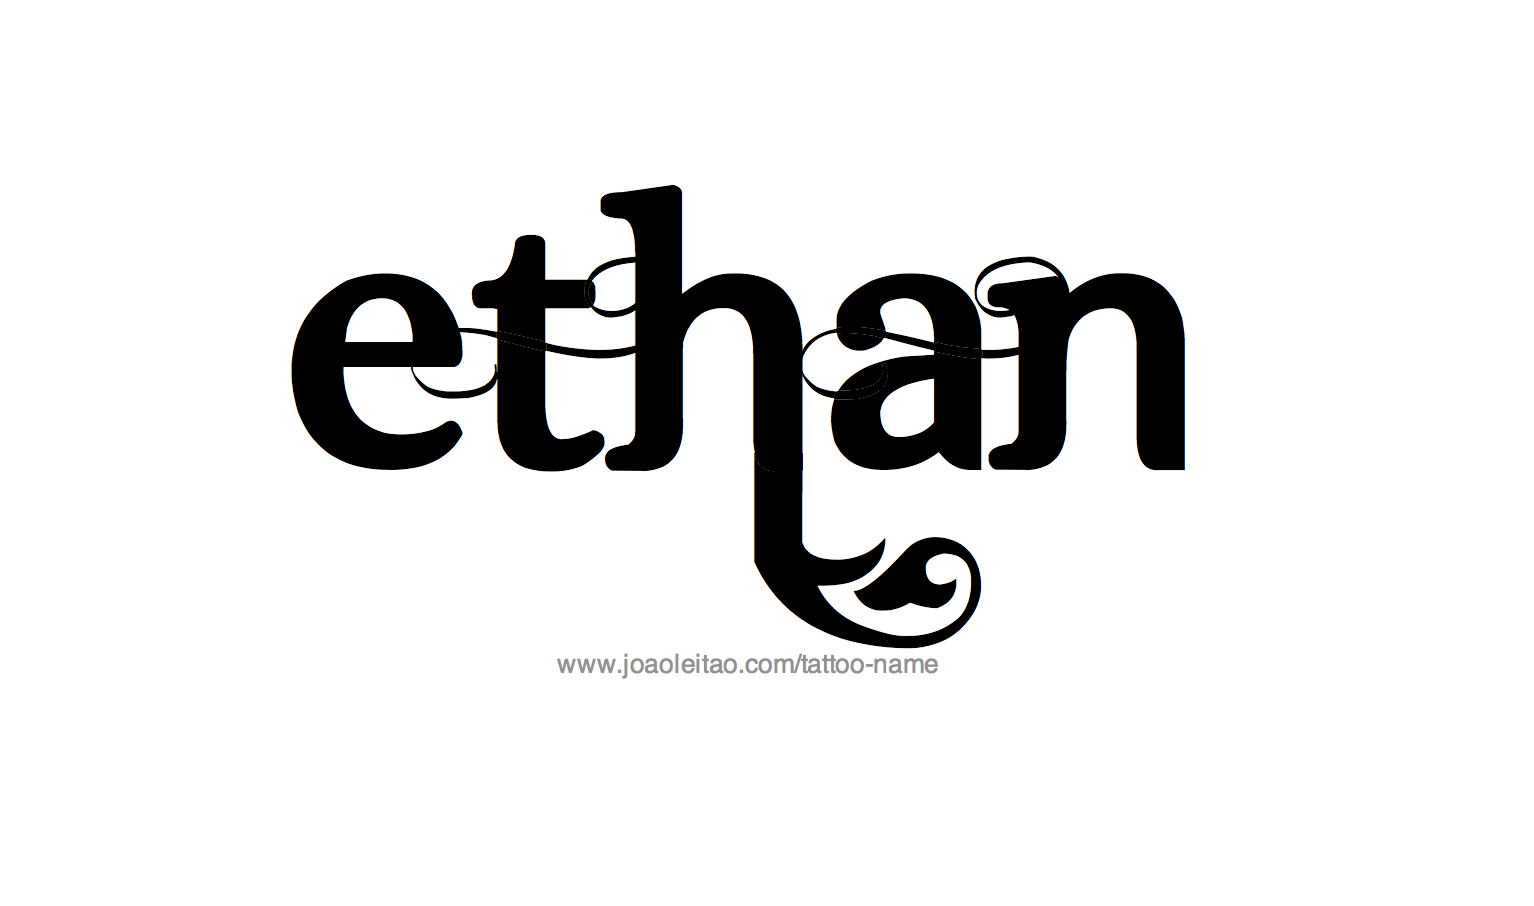 Aggregate 57 ethan name tattoo super hot  thtantai2